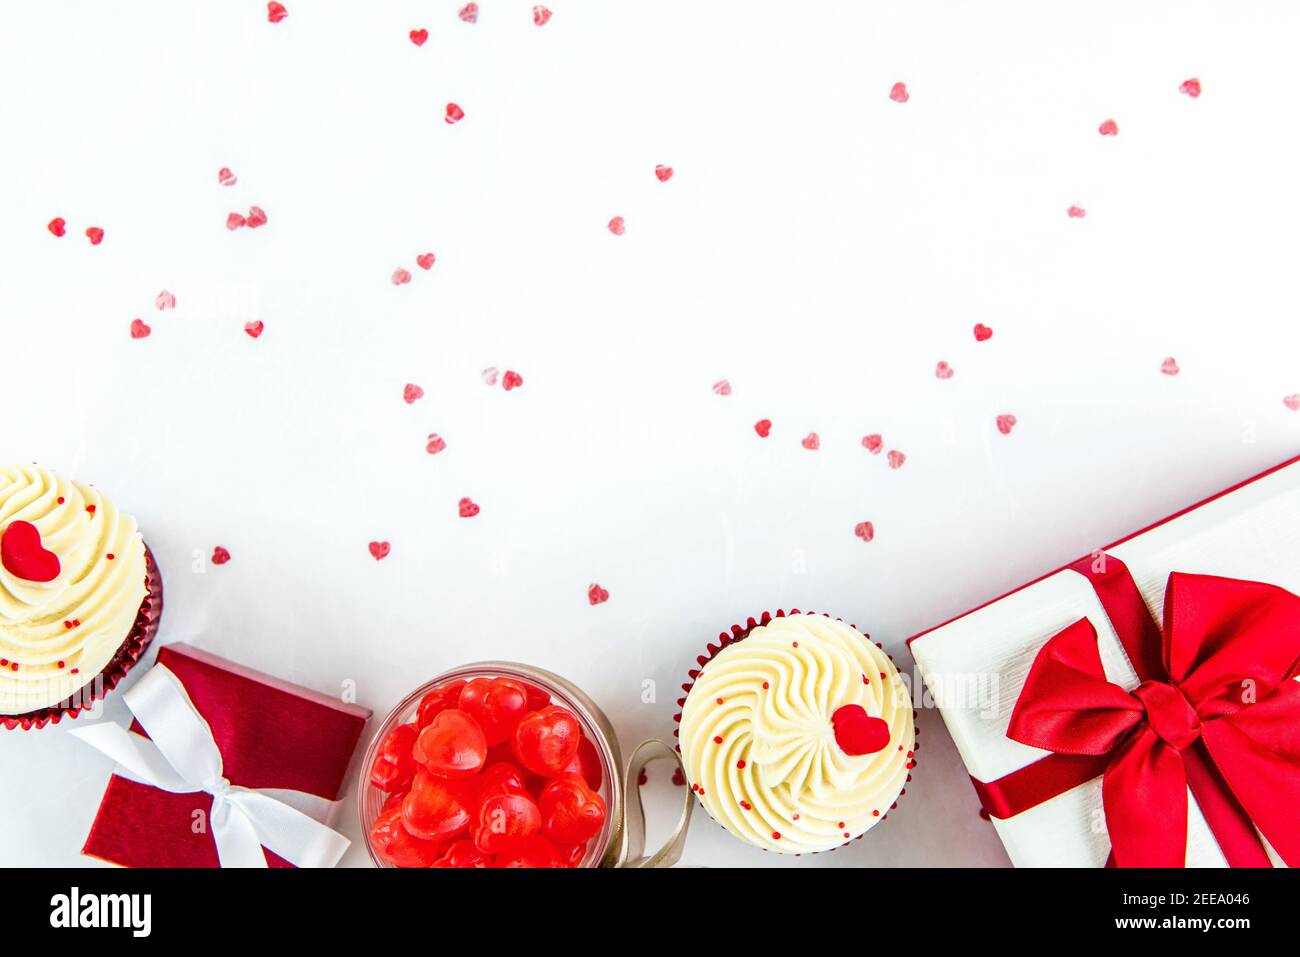 Boîtes-cadeaux avec bonbons en forme de coeur et cupcakes en velours rouge sur papier blanc, concepts de jour de la Saint-Valentin ou de mariage Banque D'Images